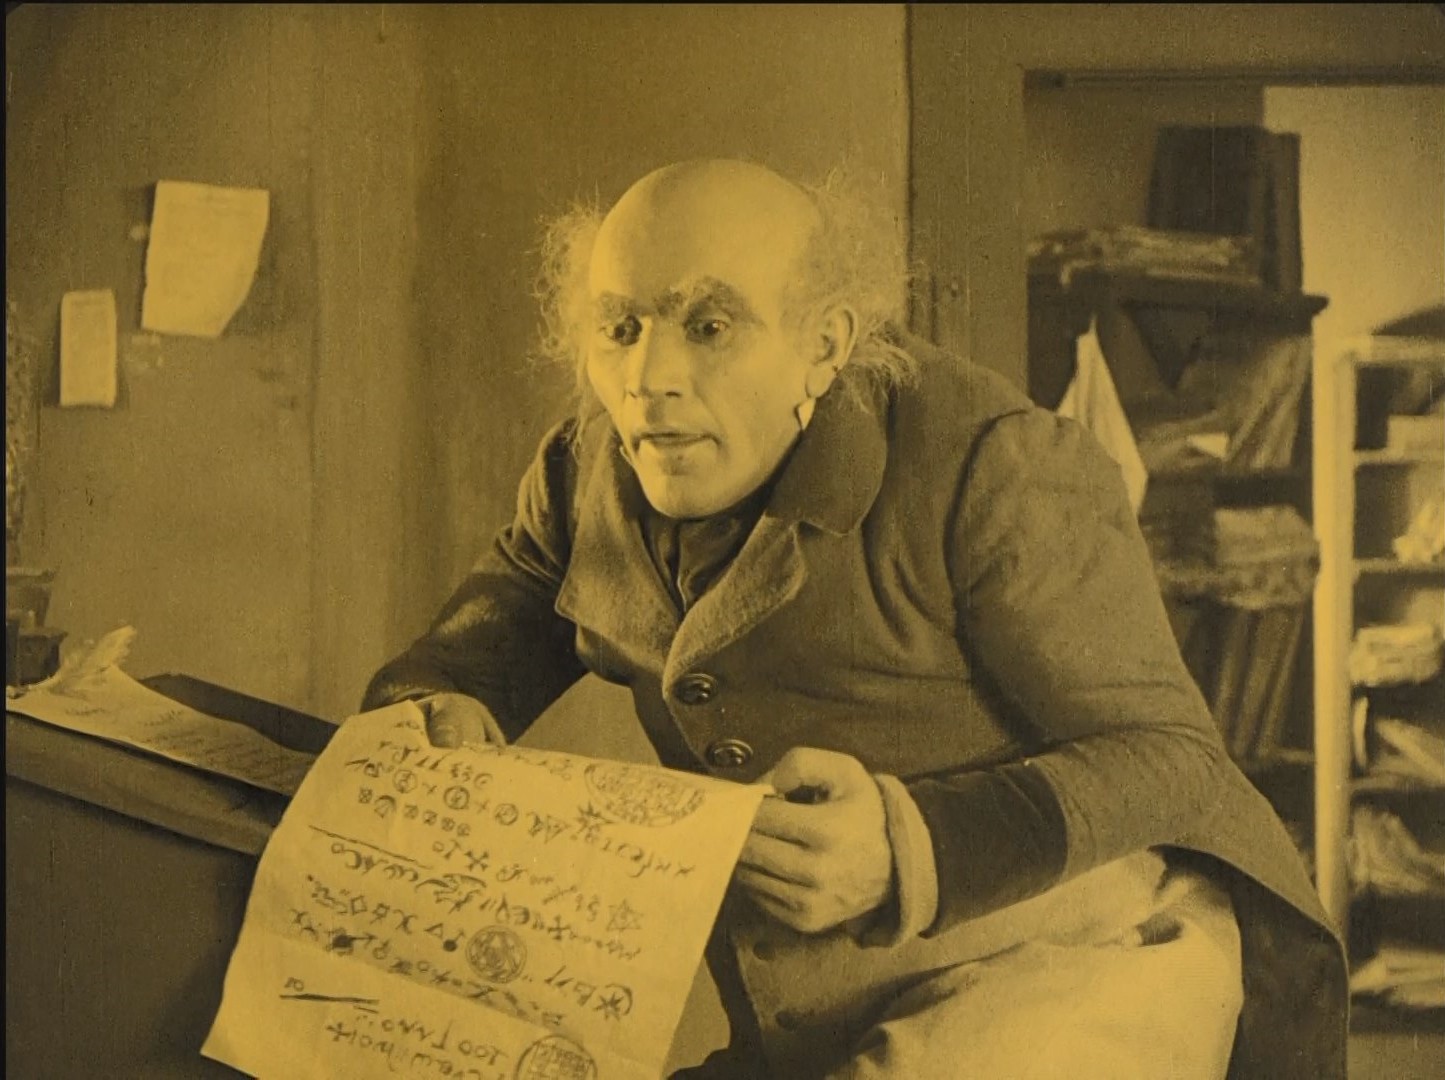 Alexander Granach dans Nosferatu Eine Symphonie des Grauens (Nosferatu, une symphonie de l'horreur, 1922) de Friedrich Wilhelm Murnau